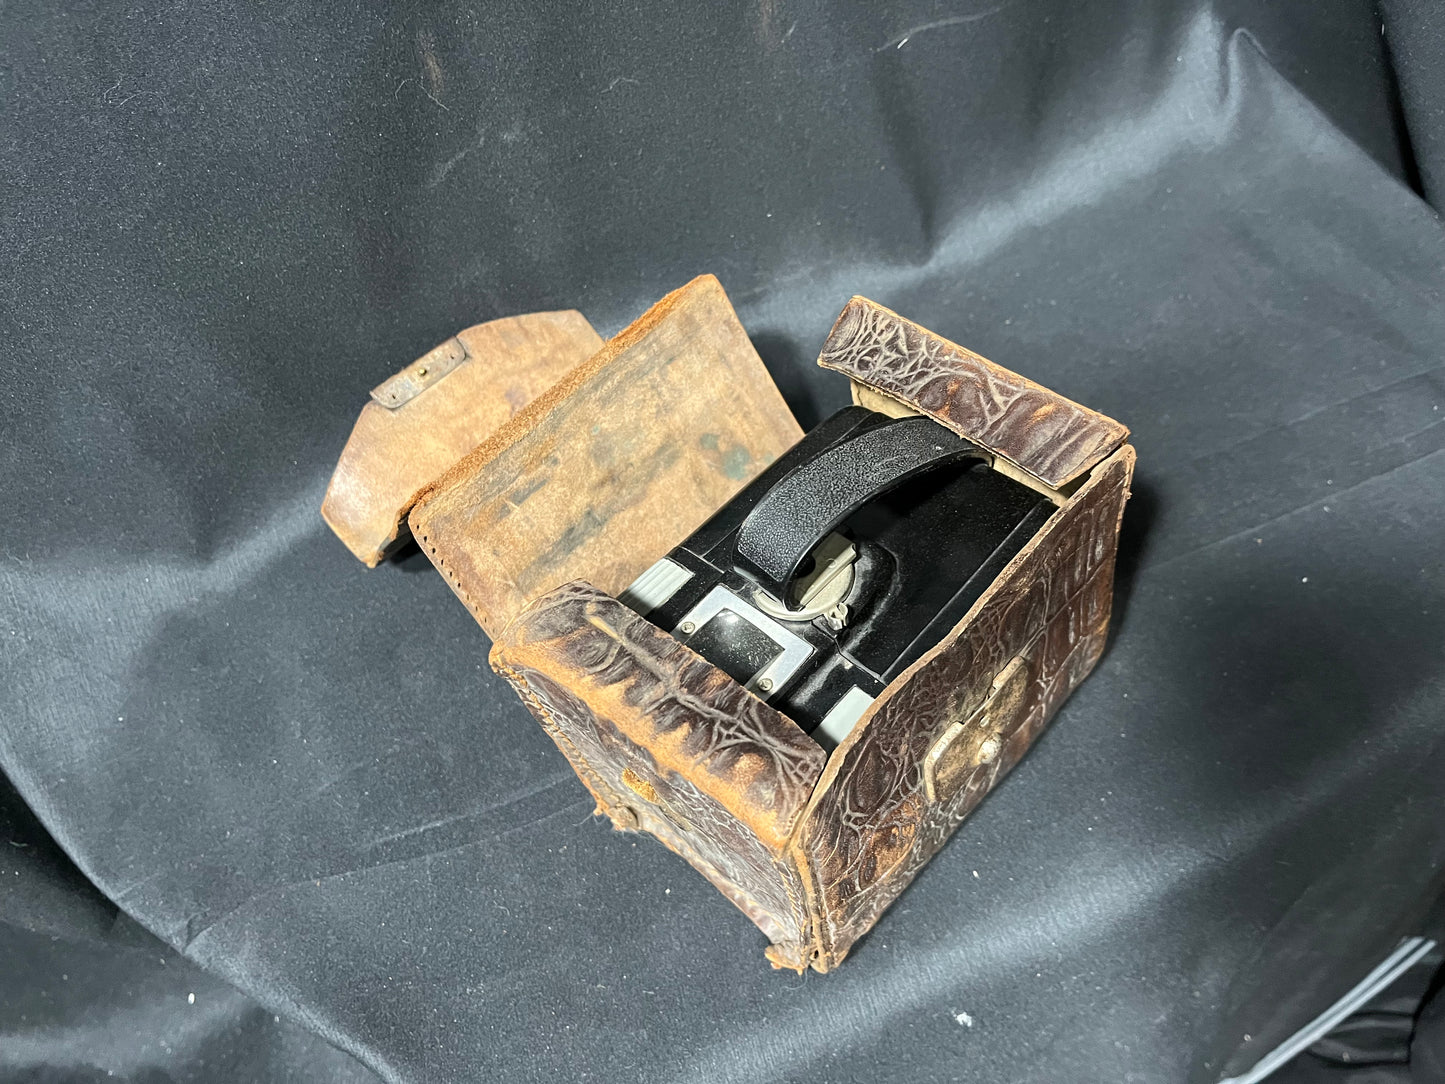 Kodak Brownie Hawkeye Camera - Flash Model with Case